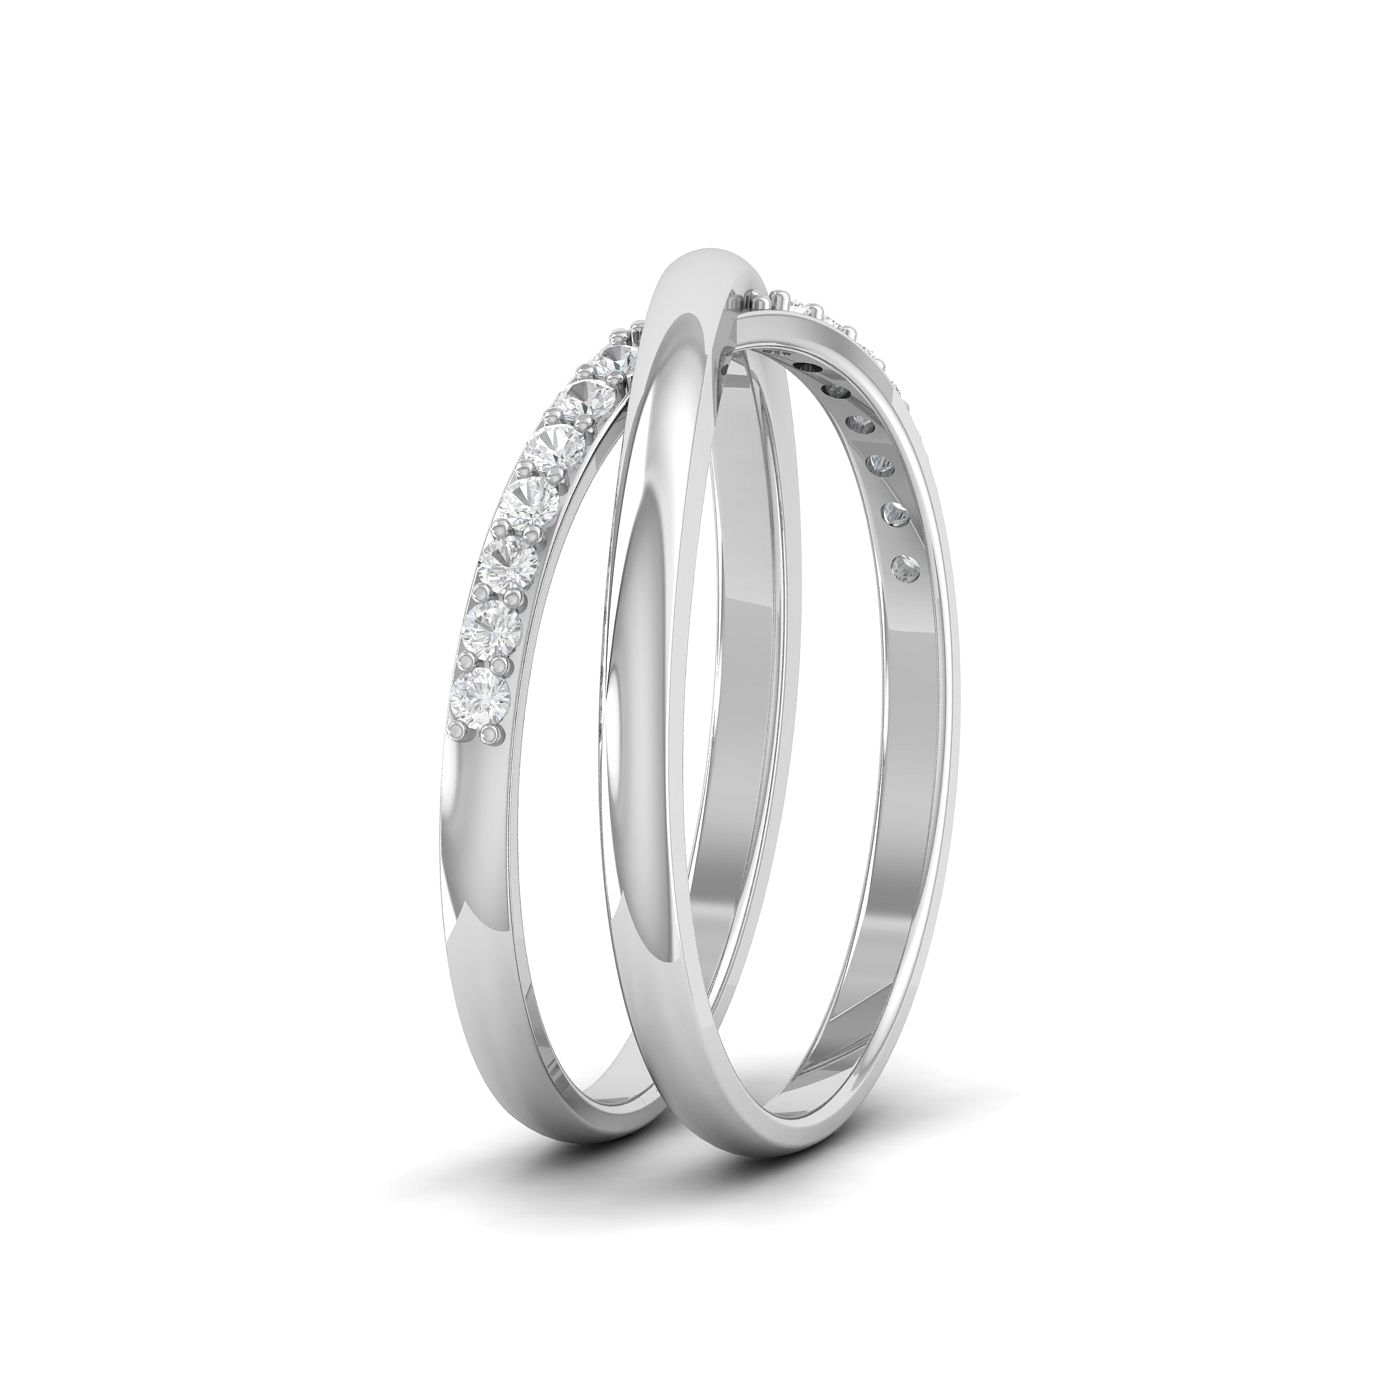 Afrodita - Alma 9mm 18-karat white gold wedding ring